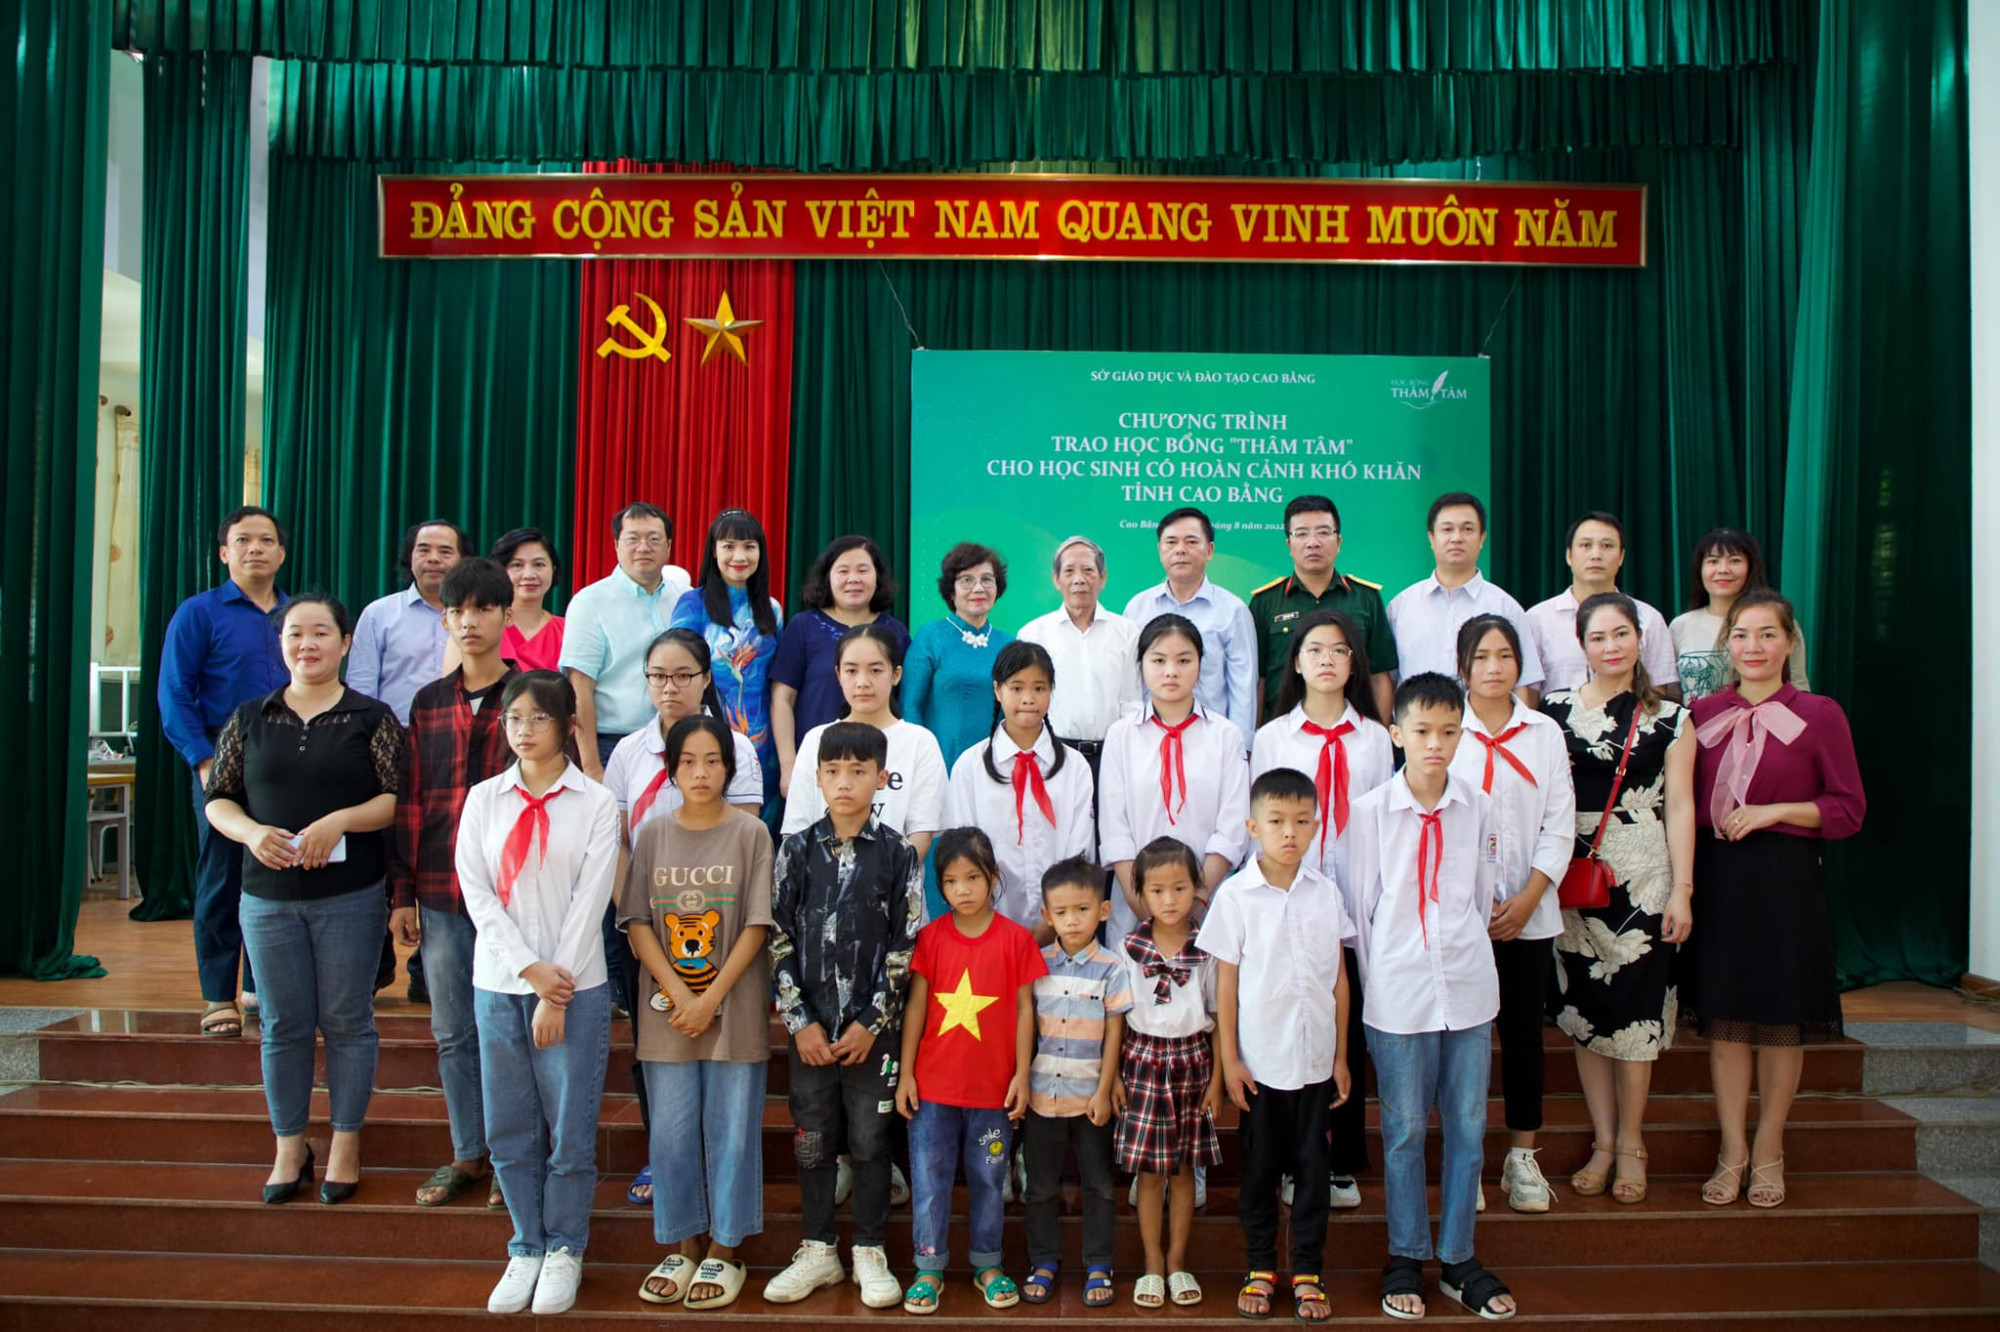 Học bổng Thâm Tâm được trao cho các học sinh có thành tích môn ngữ văn và những học sinh có hoàn cảnh khó khăn, vươn lên trong học tập của tỉnh Cao Bằng.